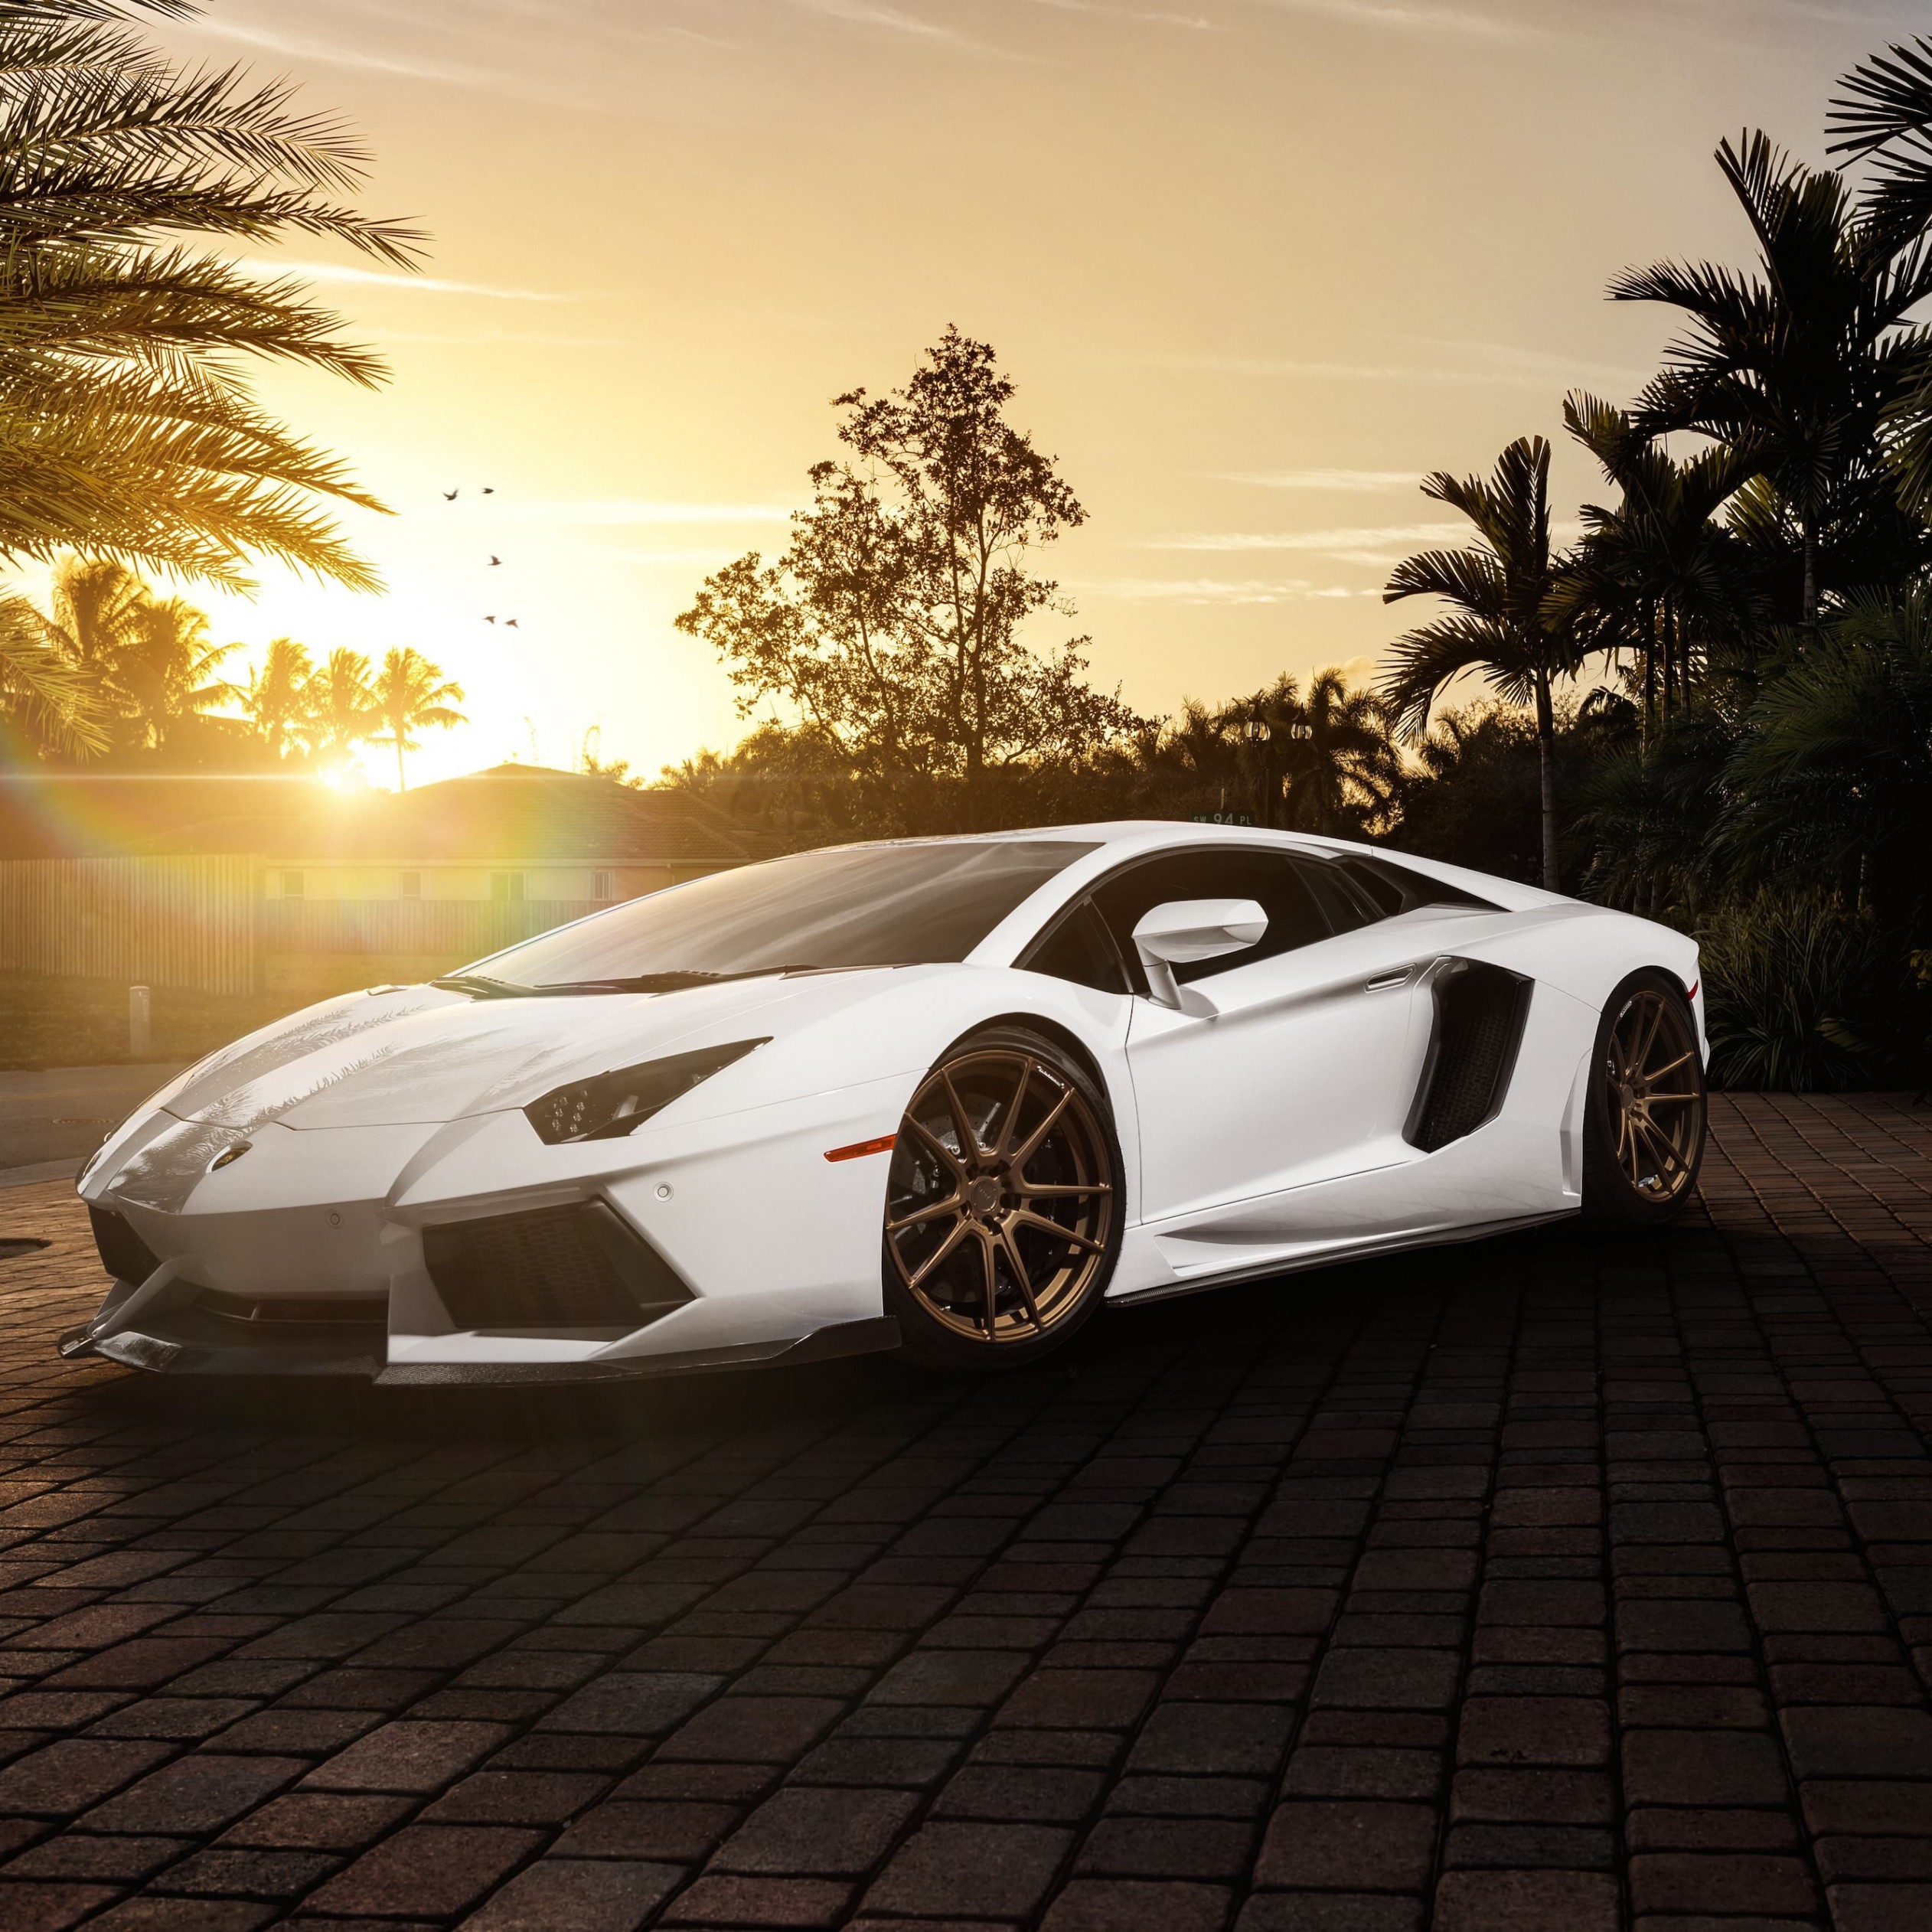 Lamborghini Aventador LP700-4 in White Wallpaper for Apple iPad mini 2